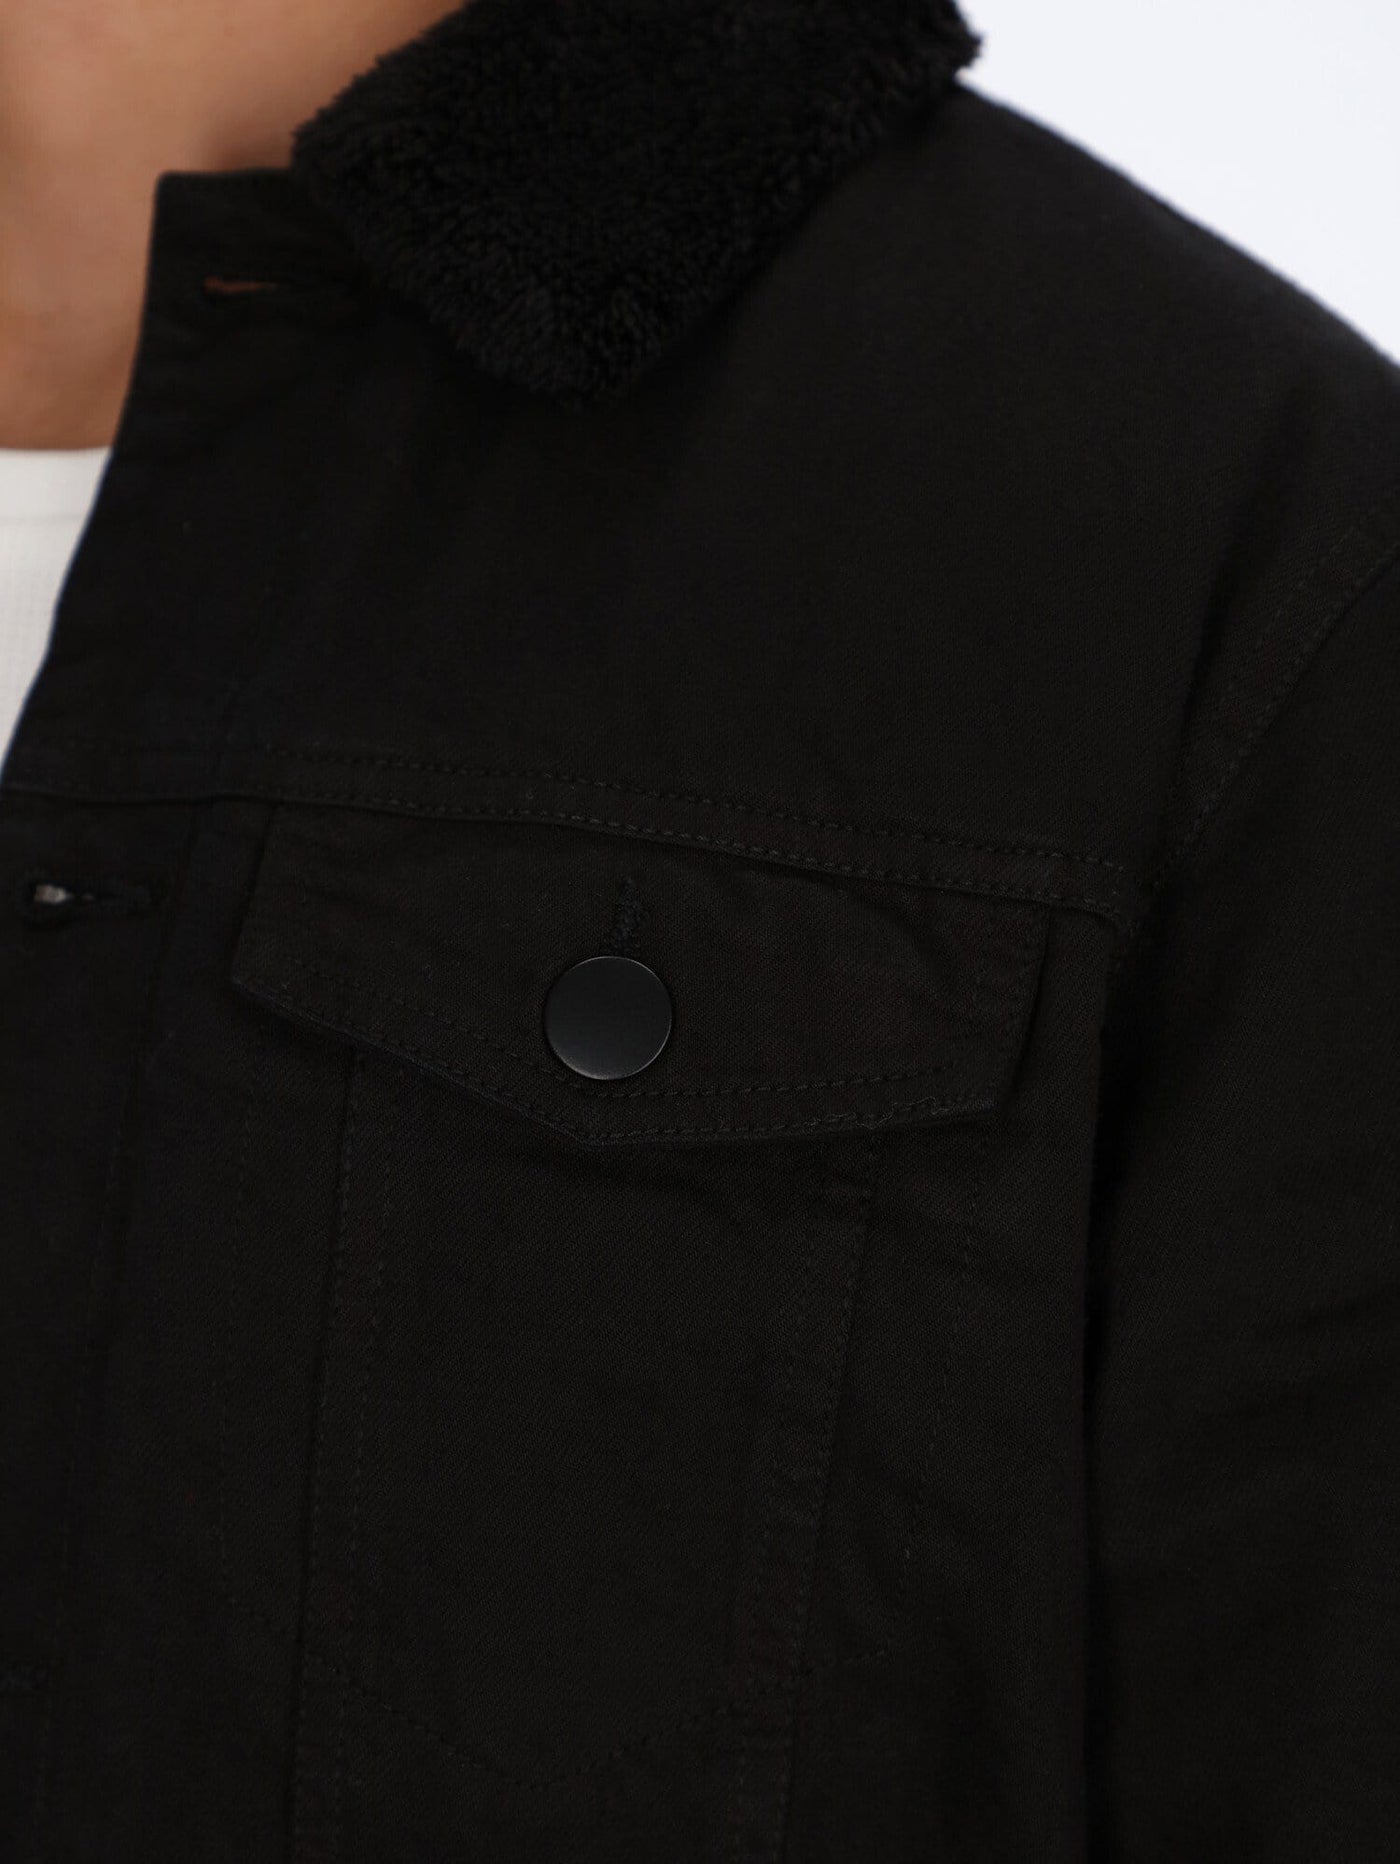 OR Jacket Denim Jacket Inside Black Fur Collar